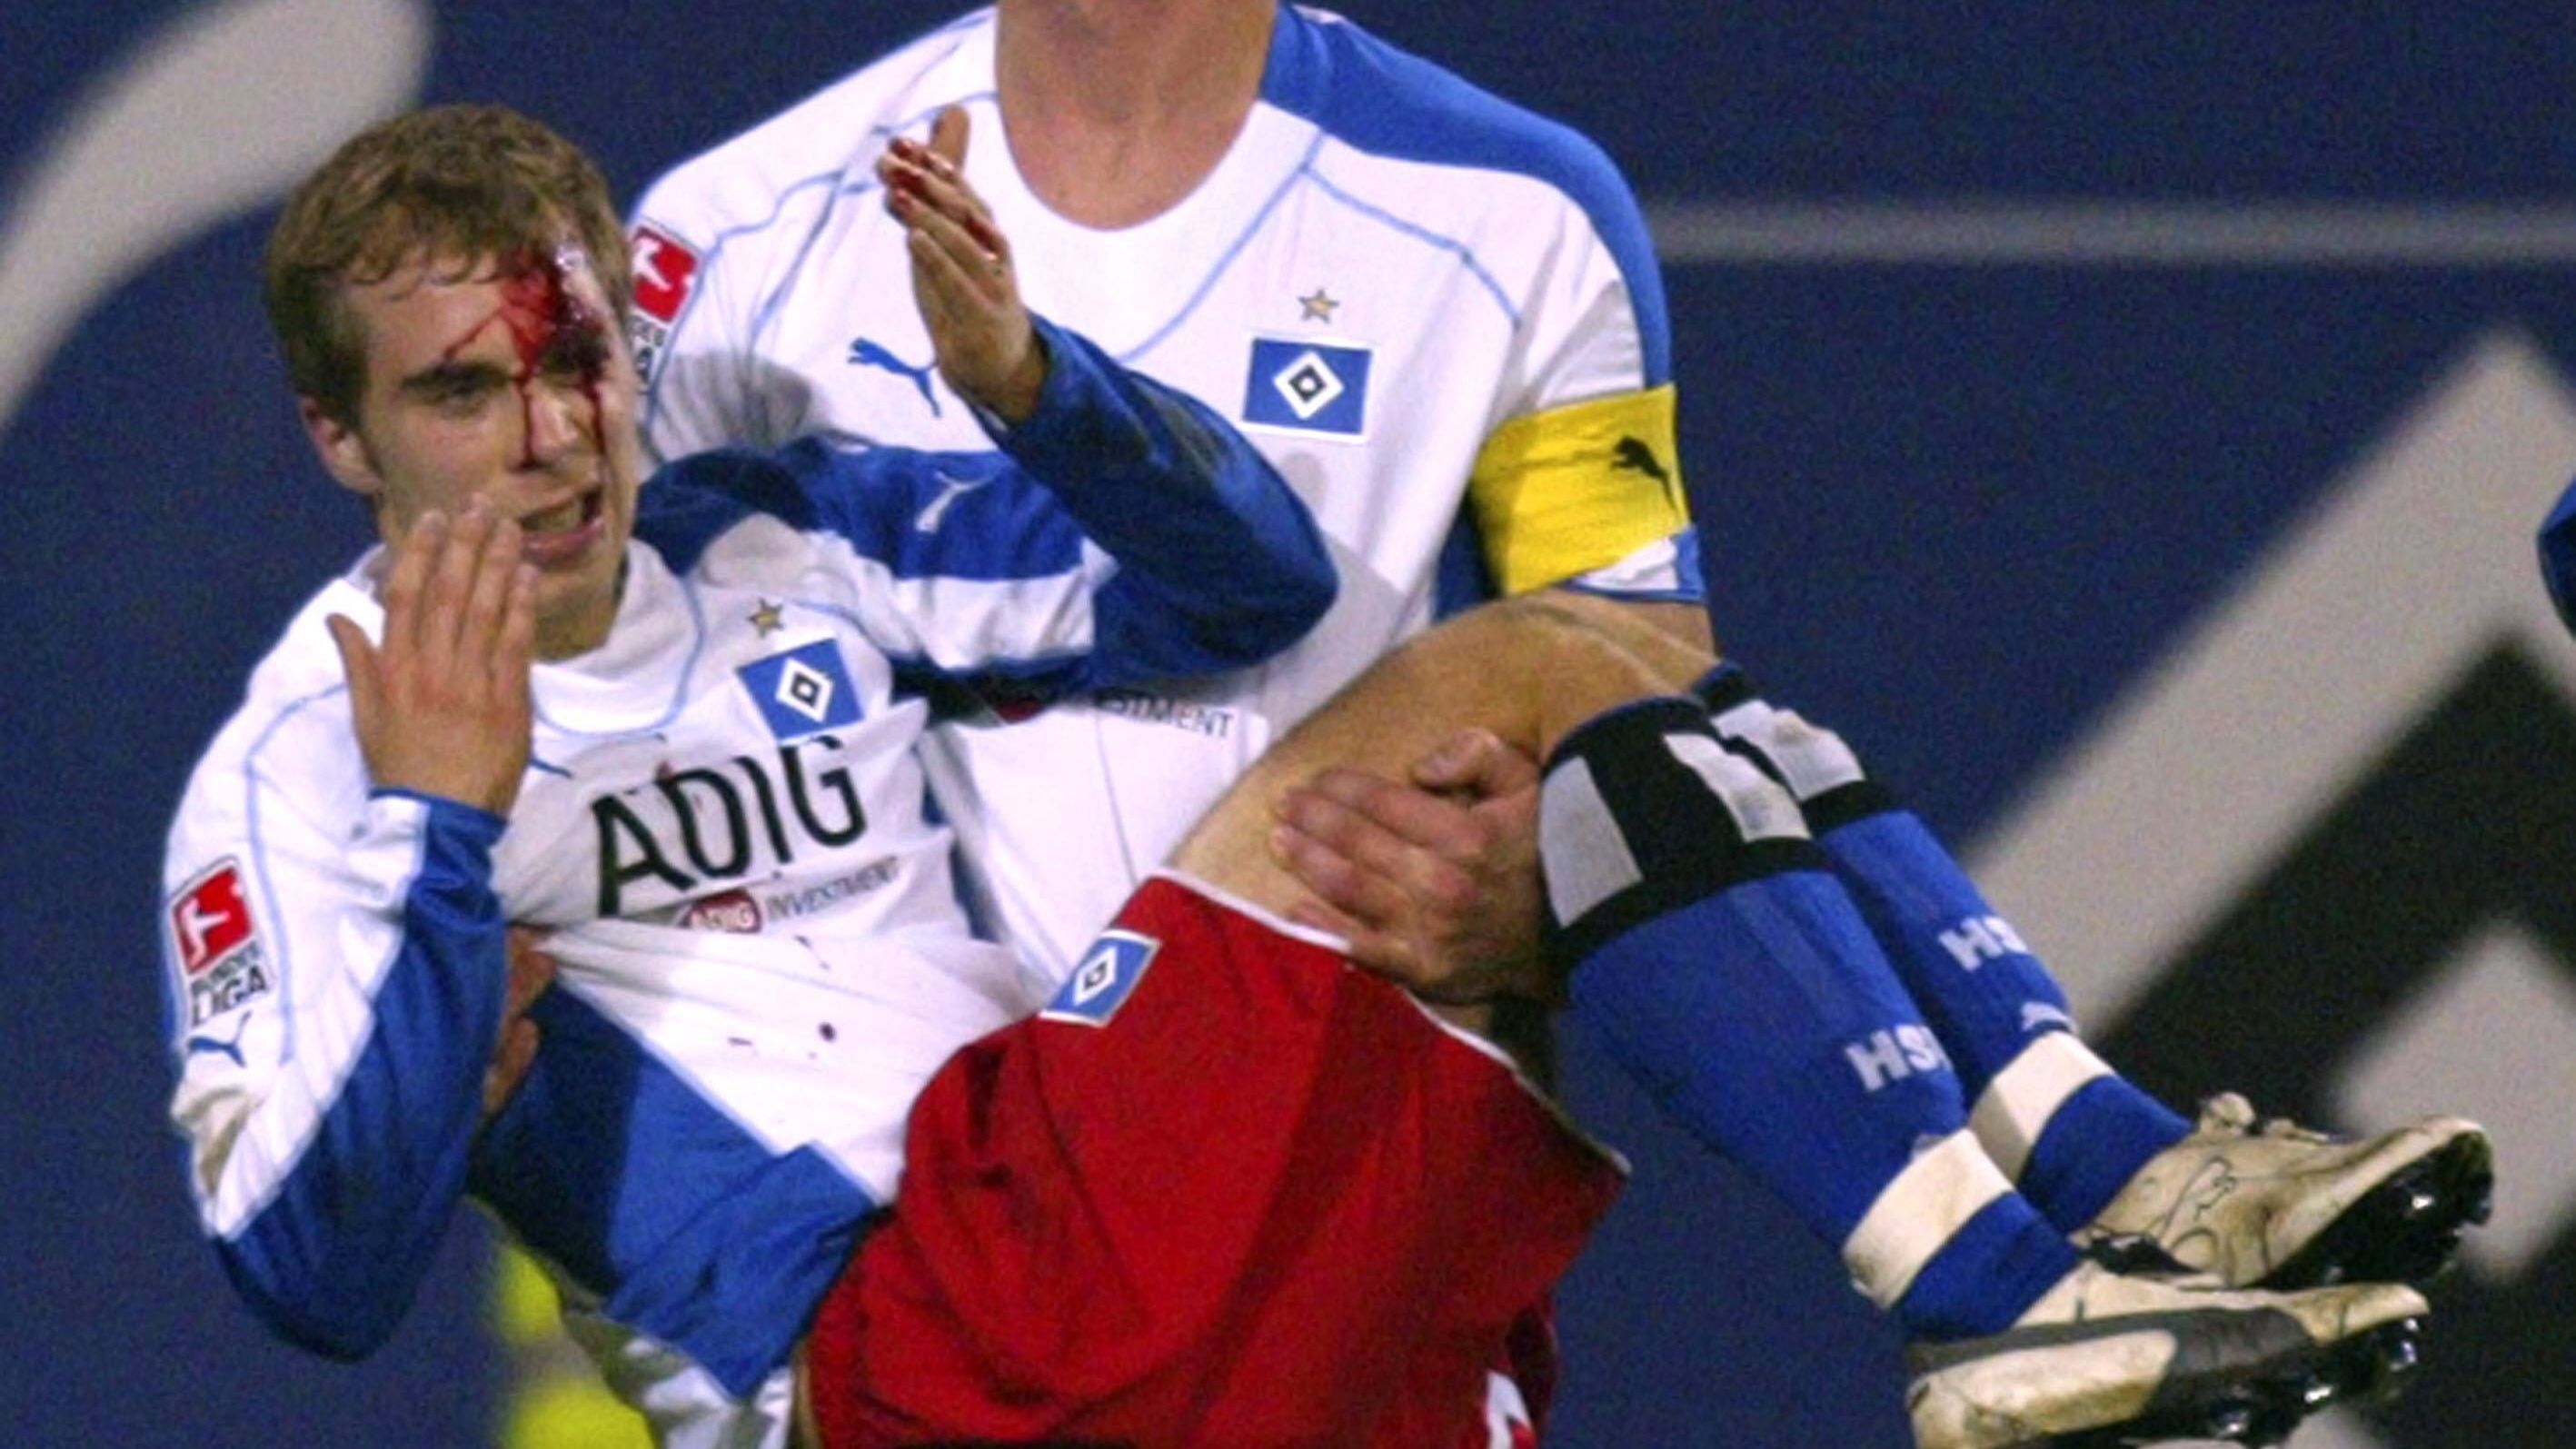 <strong>Alexander Laas: Bundesliga 2005, 1. FC Köln - Hamburger SV</strong><br>Daniel van Buyten trägt den verletzten Alexander Laas (beide HSV) aus der Gefahrenzone. Ein Trommelstock, der von einem Kölner Fan geworfen wurde, traf den HSV Spieler im Gesicht. Laas erlitt dadurch eine ein bis zwei Zentimeter lange Platzwunde.&nbsp;